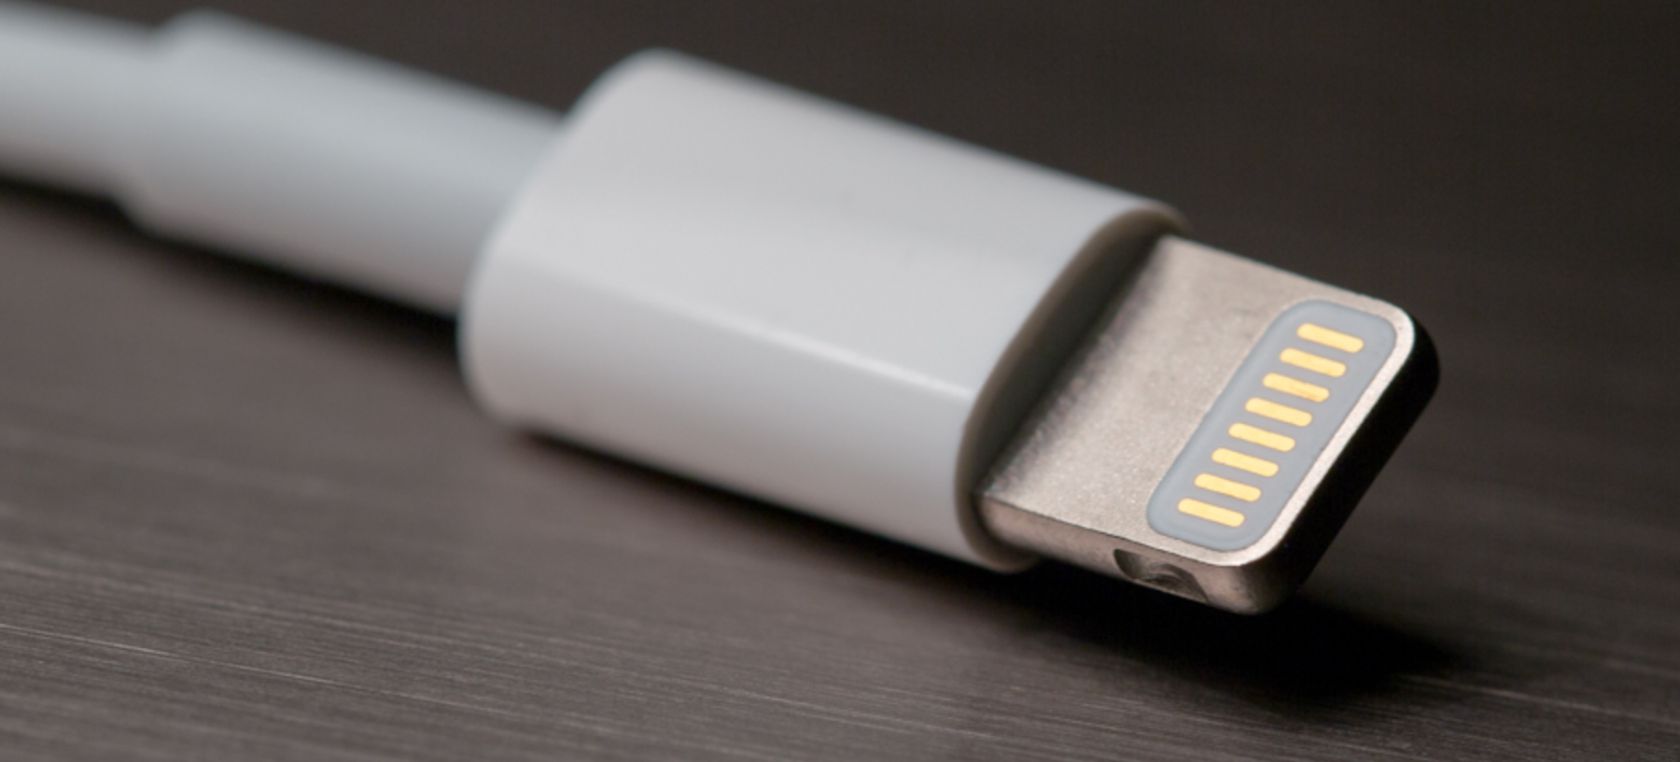 Apple comienza las pruebas del puerto USB-C